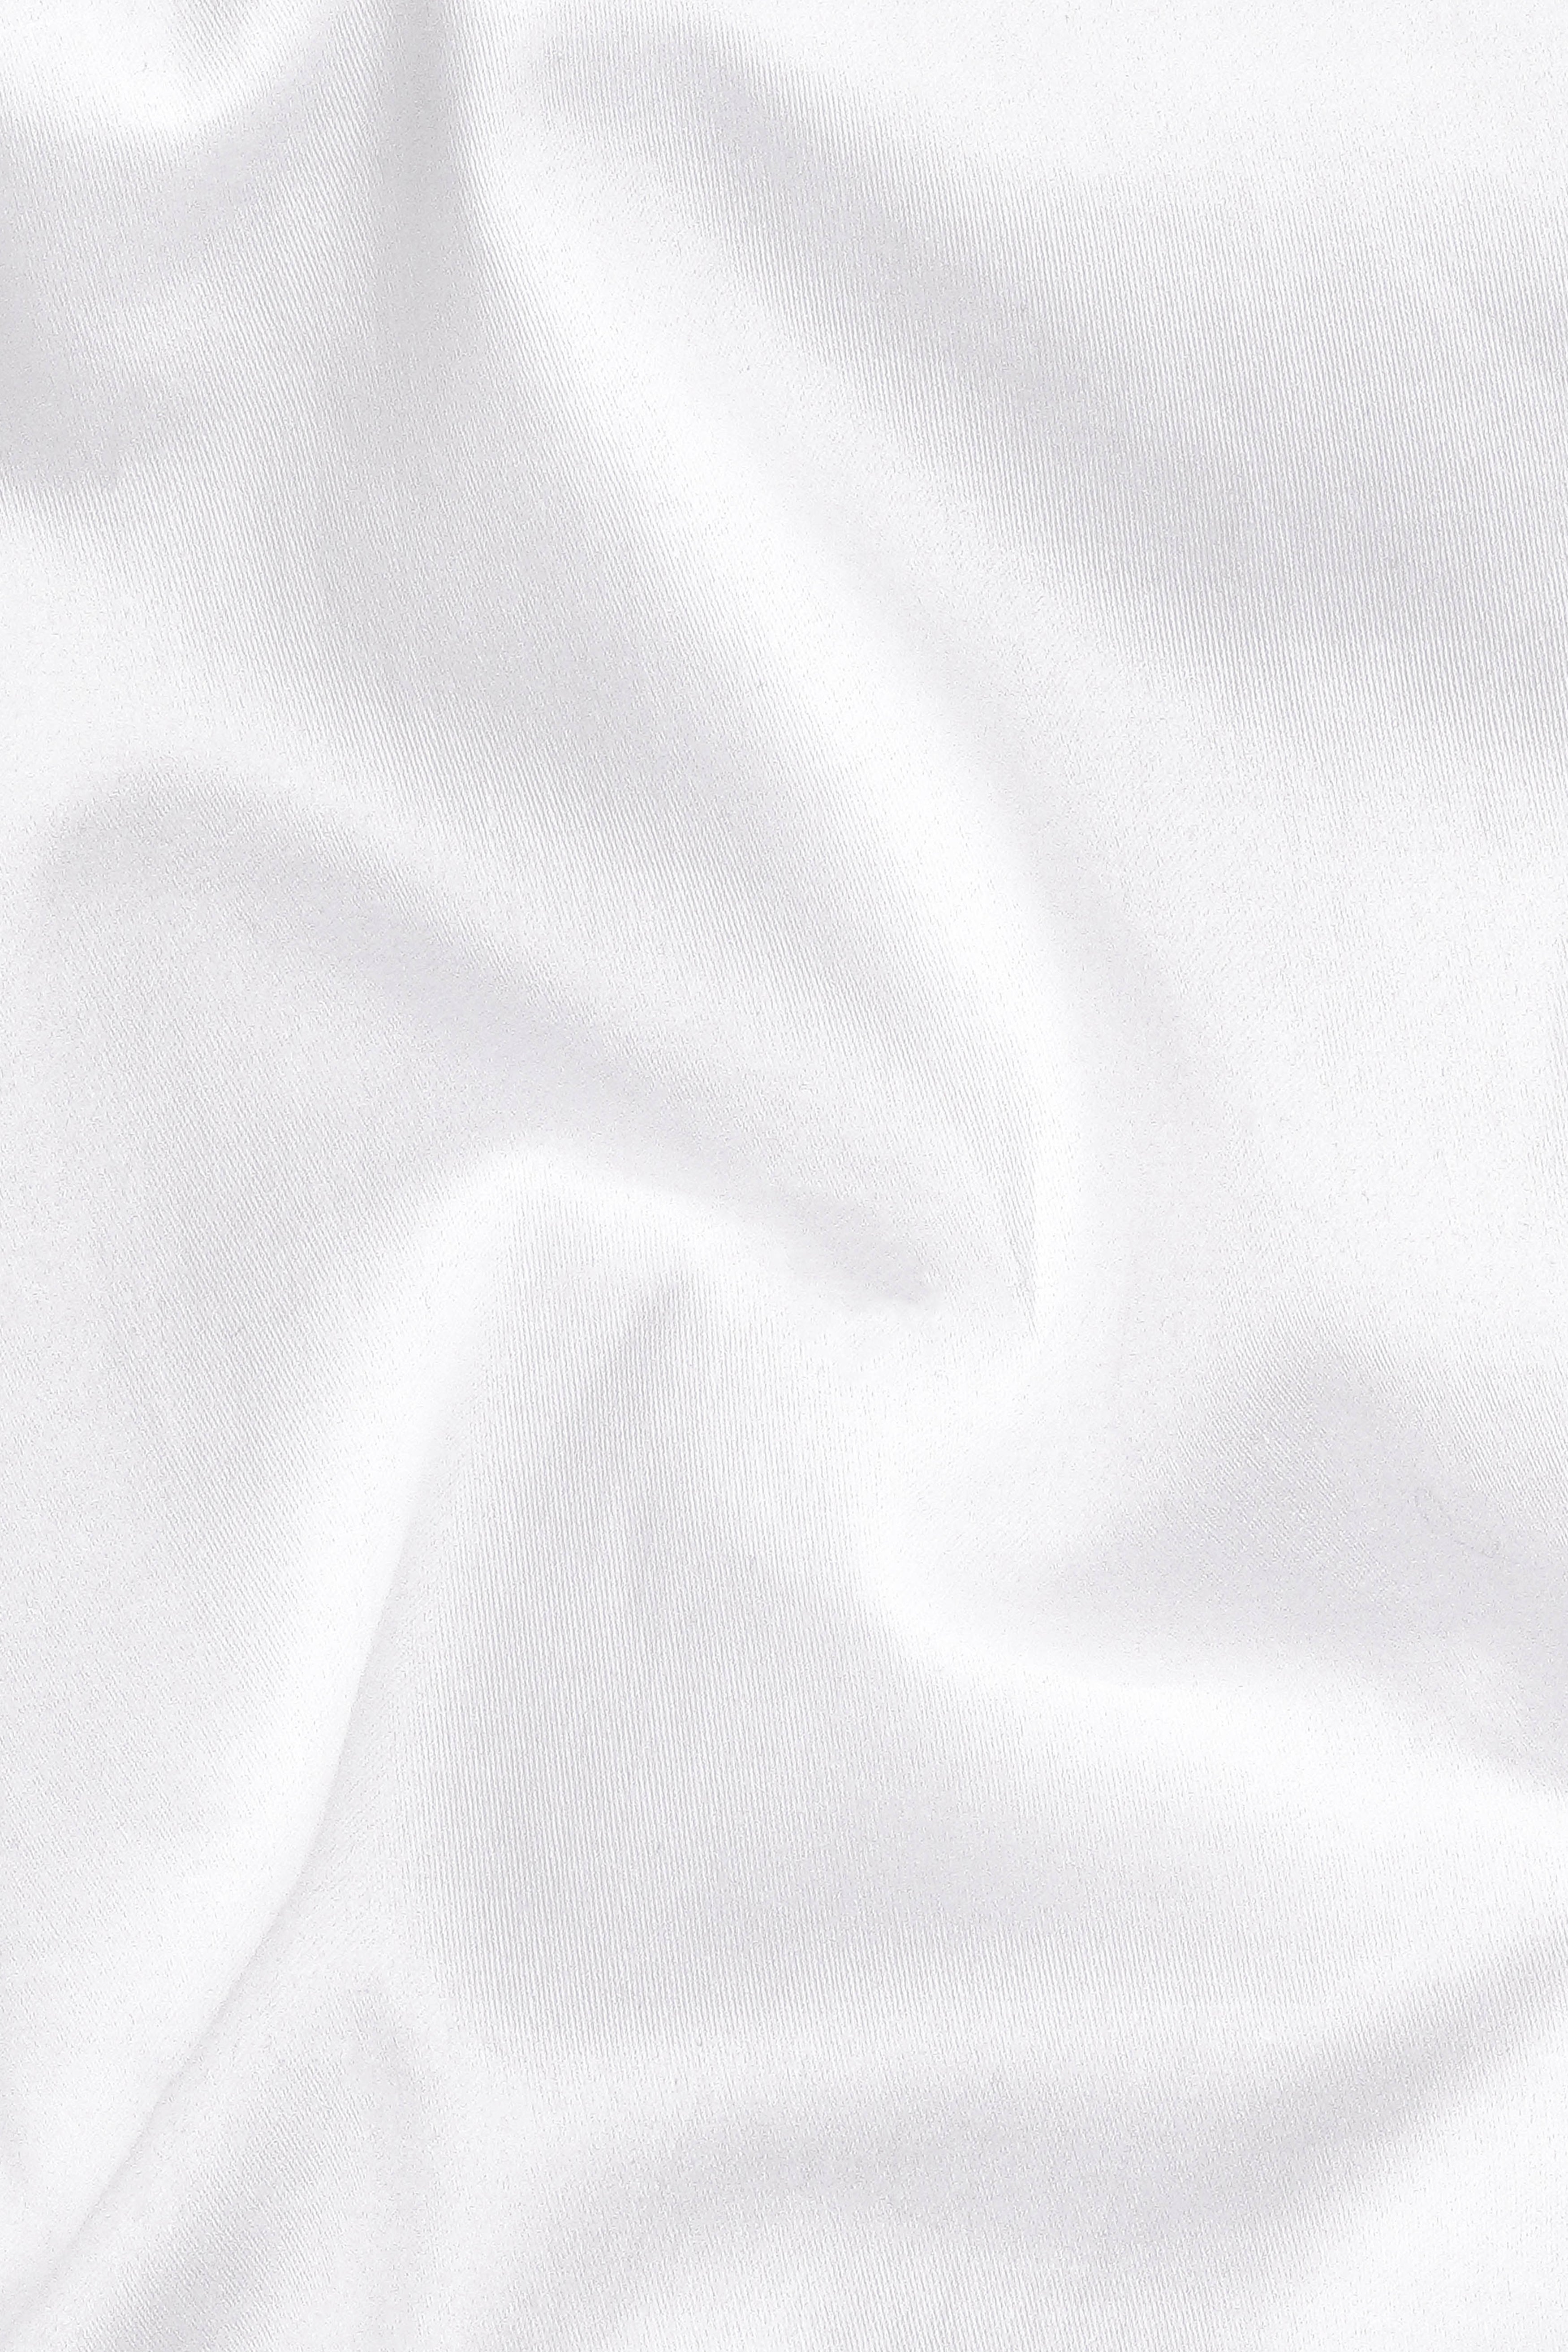 Bright White Subtle Sheen Super Soft Premium Cotton Kurta Set